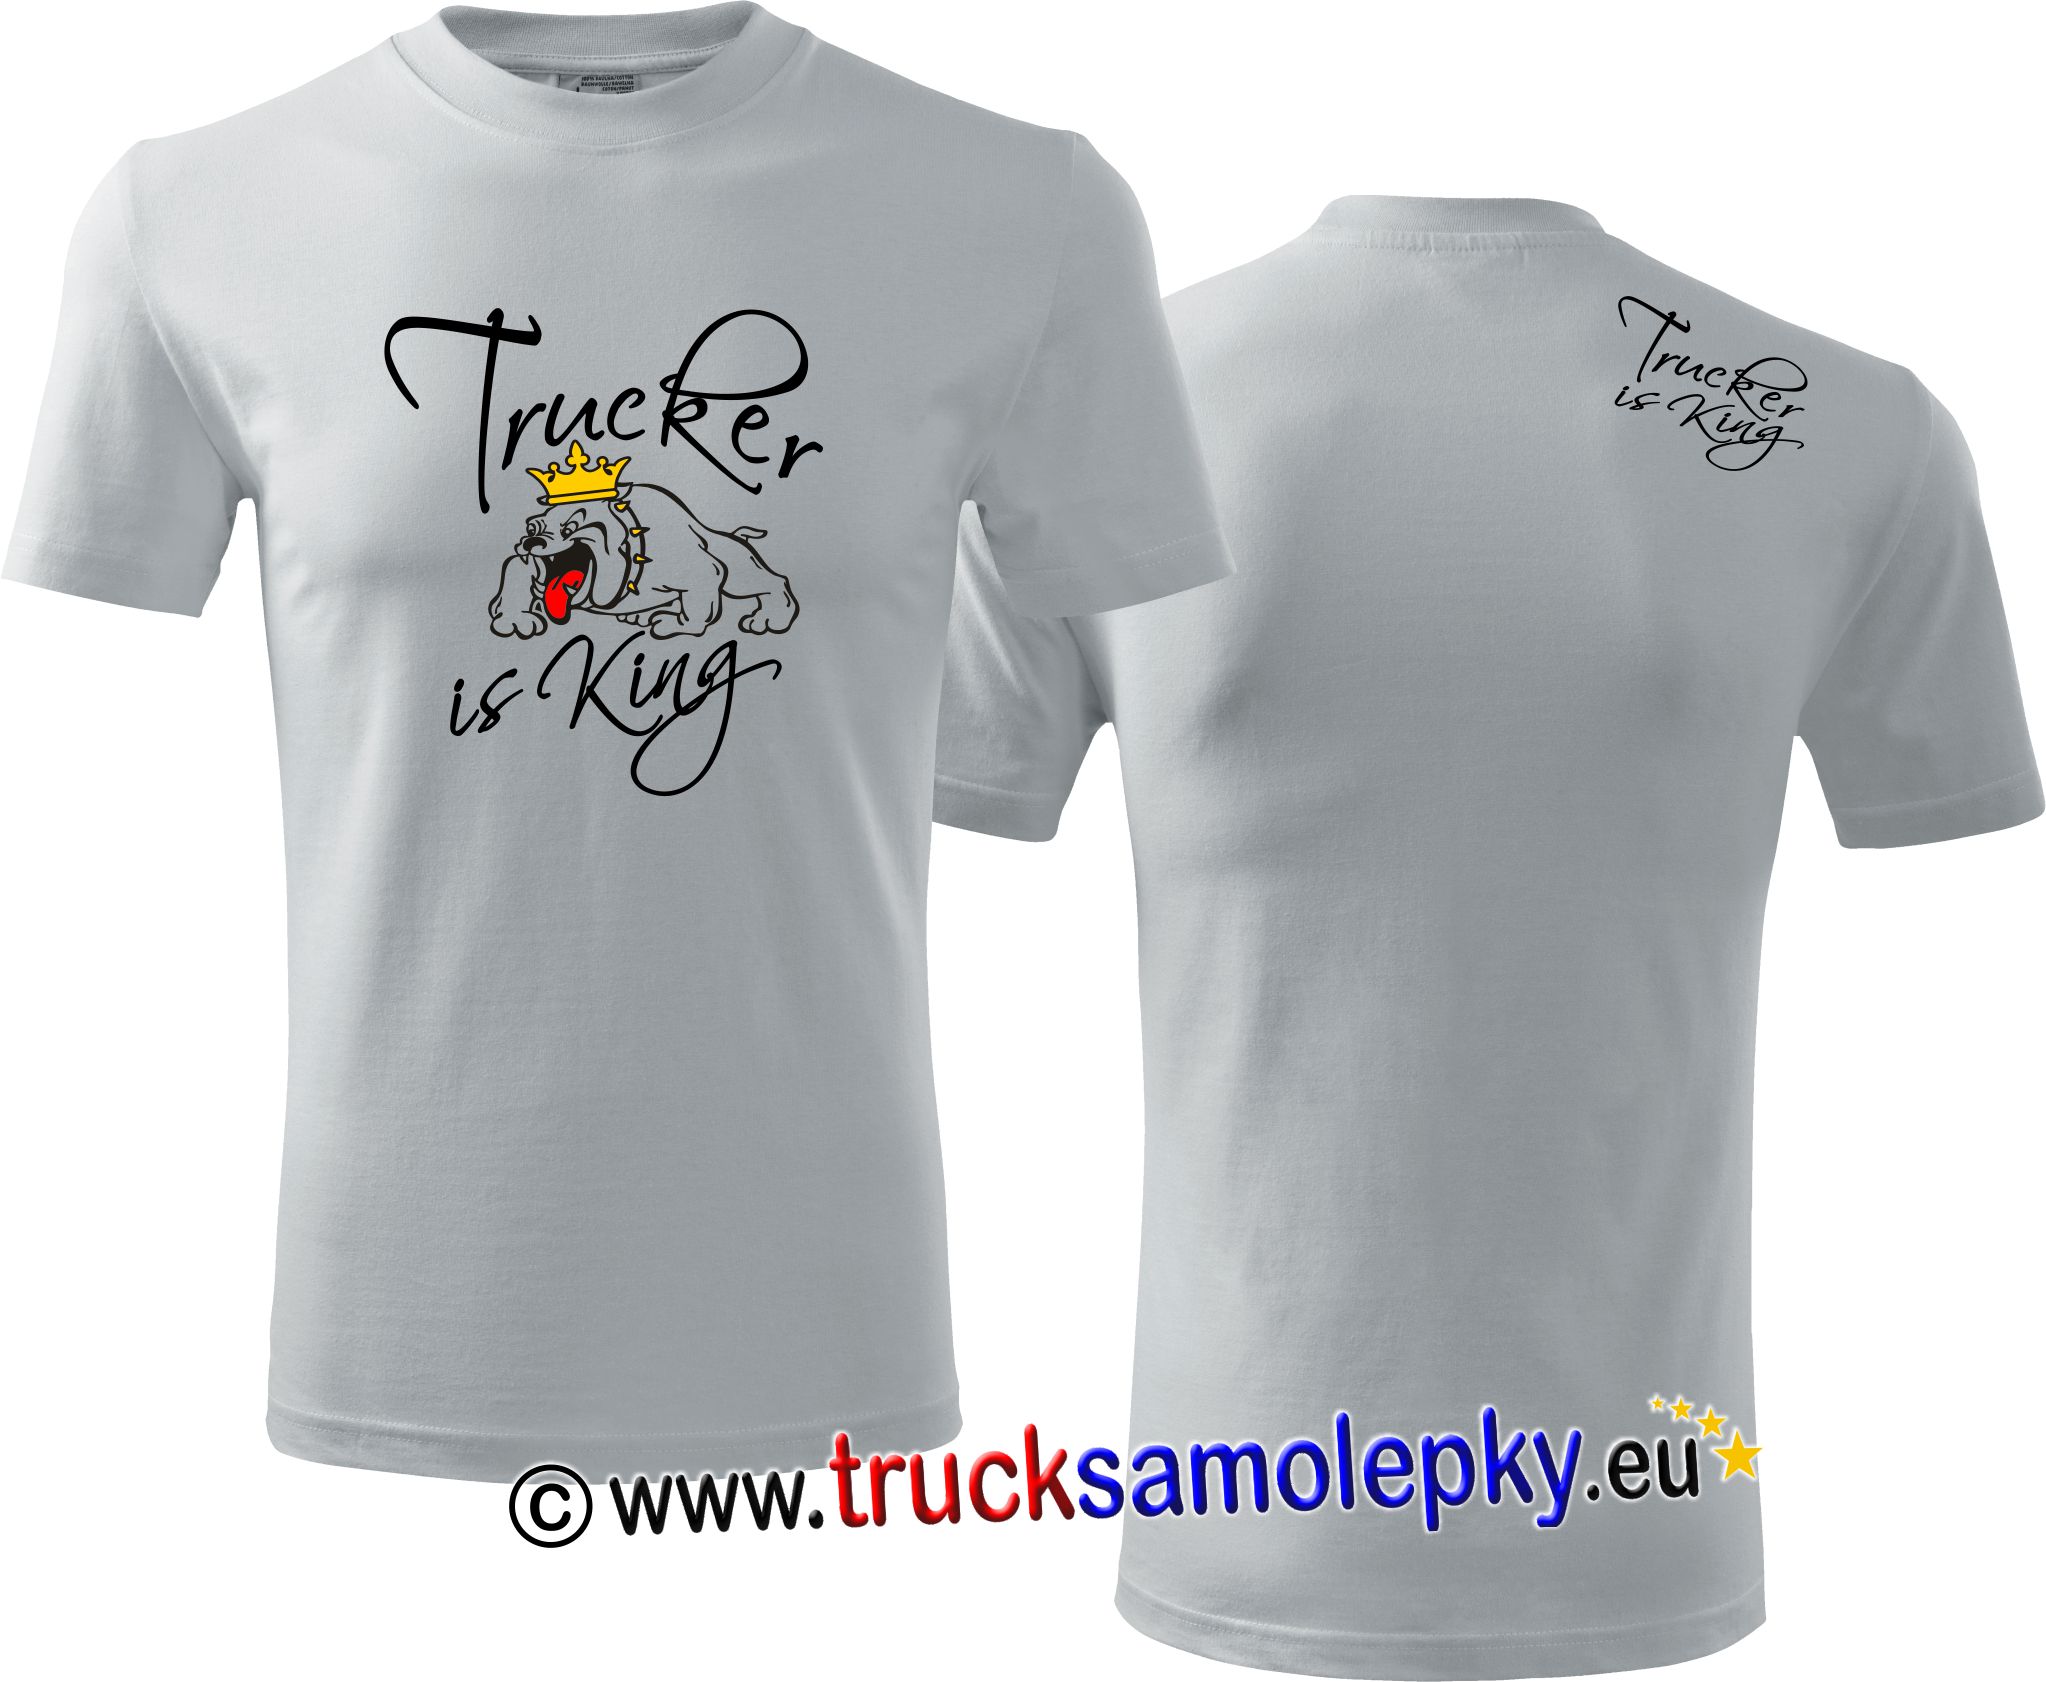 Truck tričko TRUCKER IS KING II. v barvě bílé